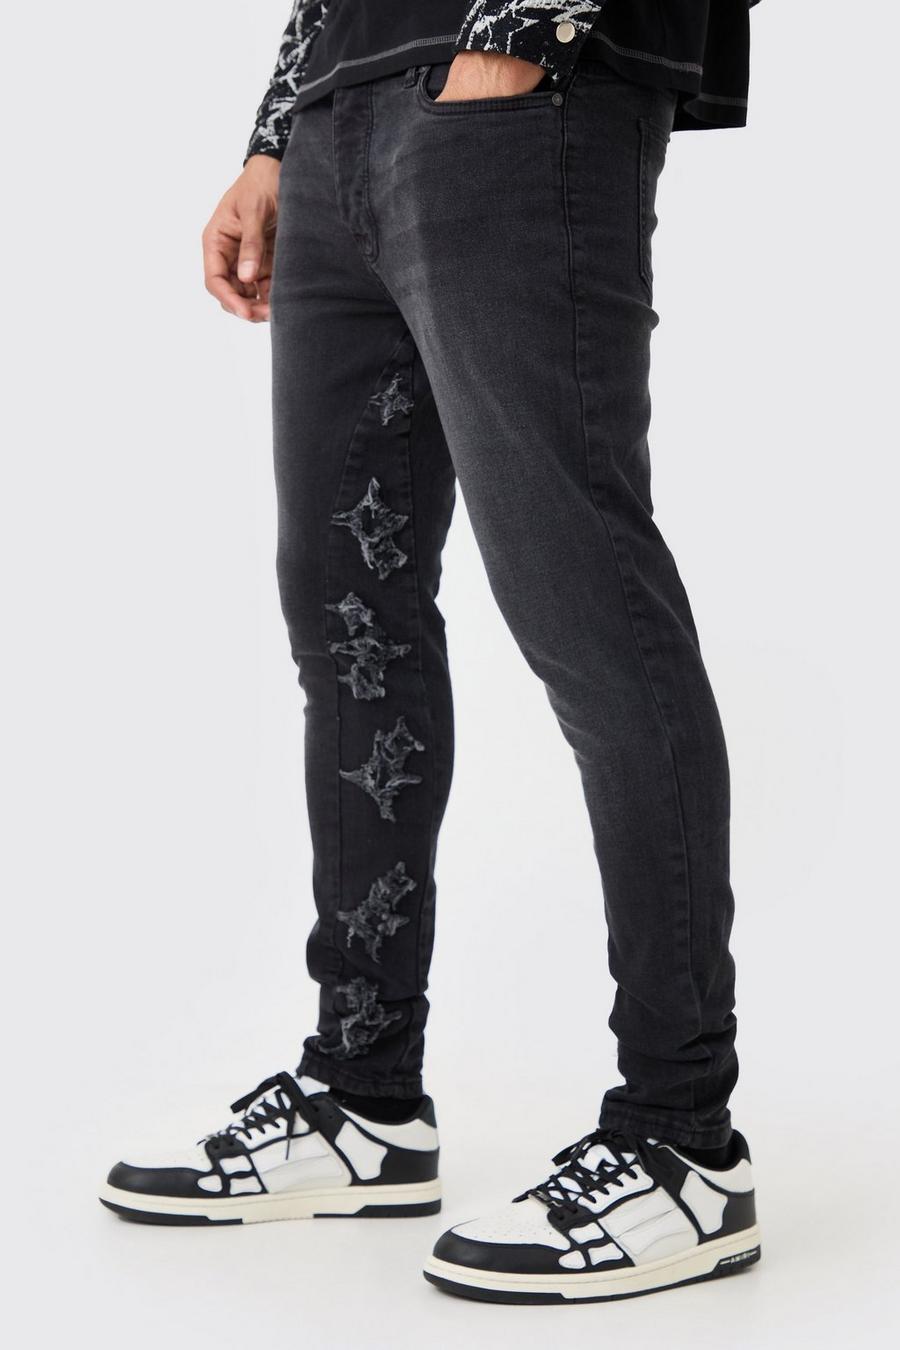 Jeans Skinny Fit Stretch in nero slavato con applique e inserti, Washed black